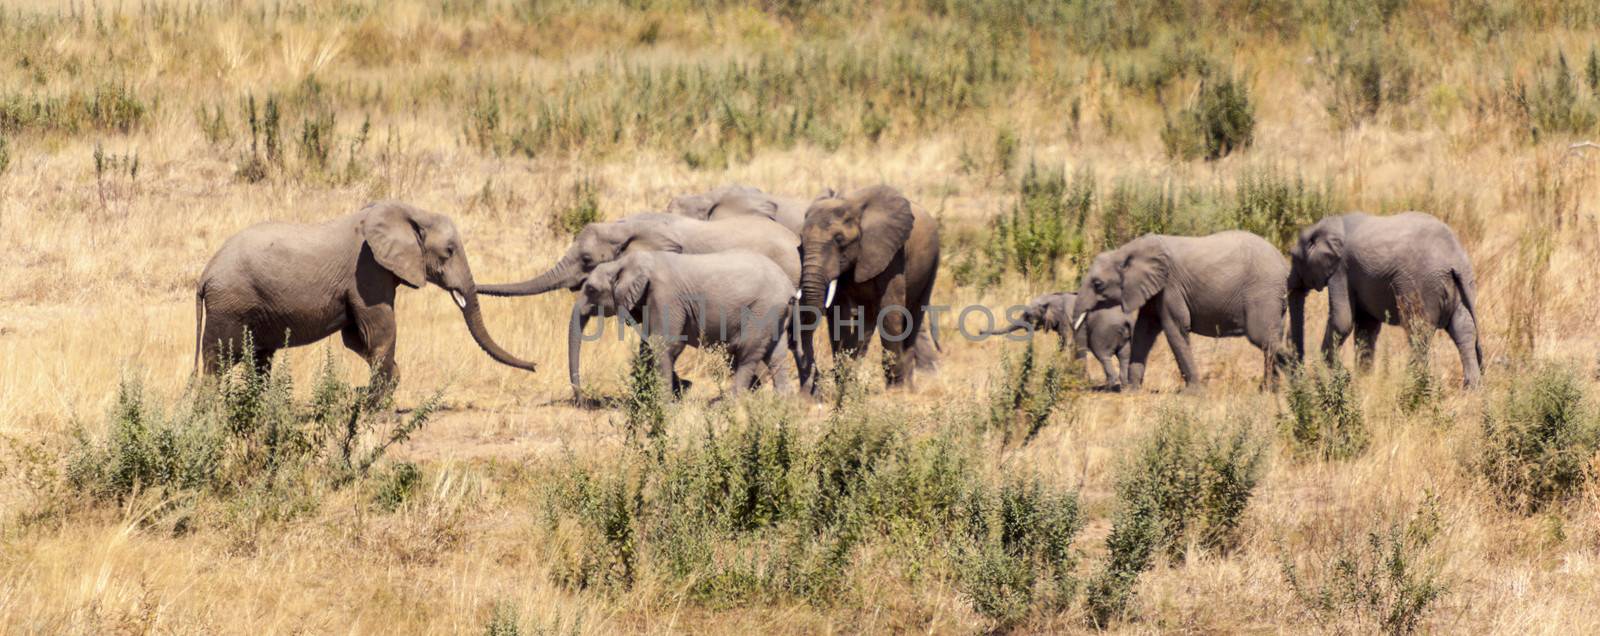 Group Of Elephants by Imagecom